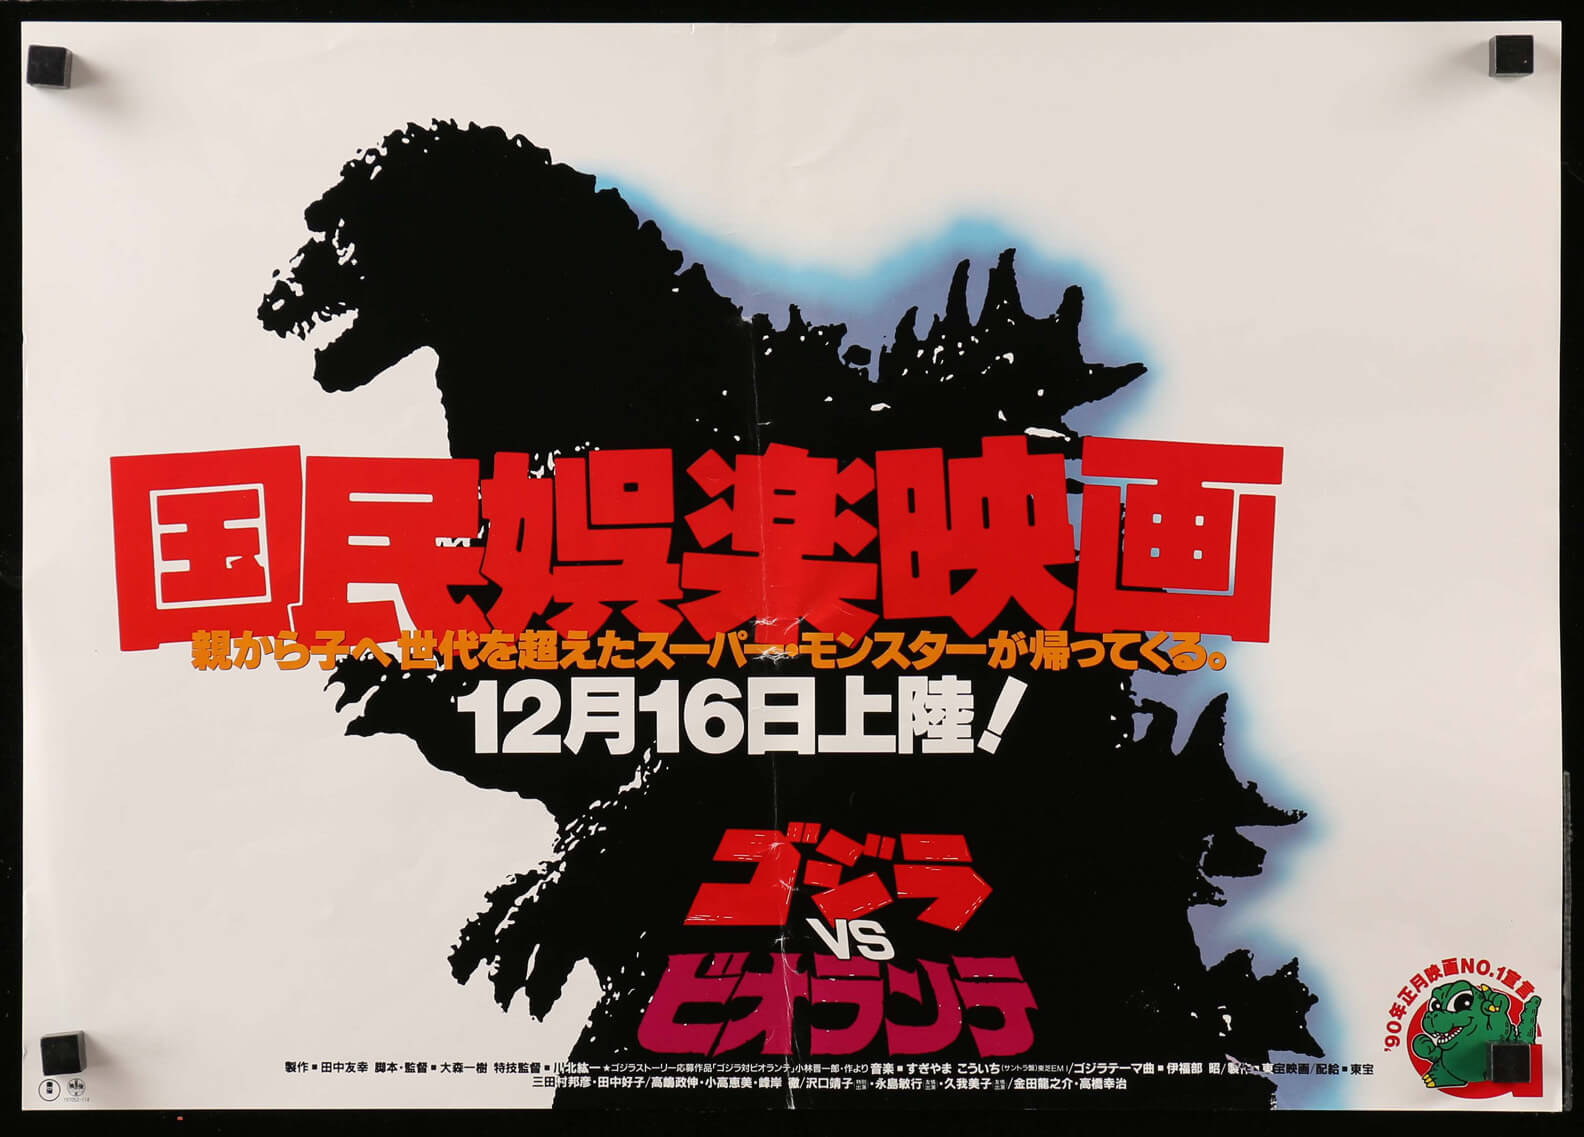 Godzilla Vs Biollante Movie Poster 2" x 3" Refrigerator Locker MAGNET 